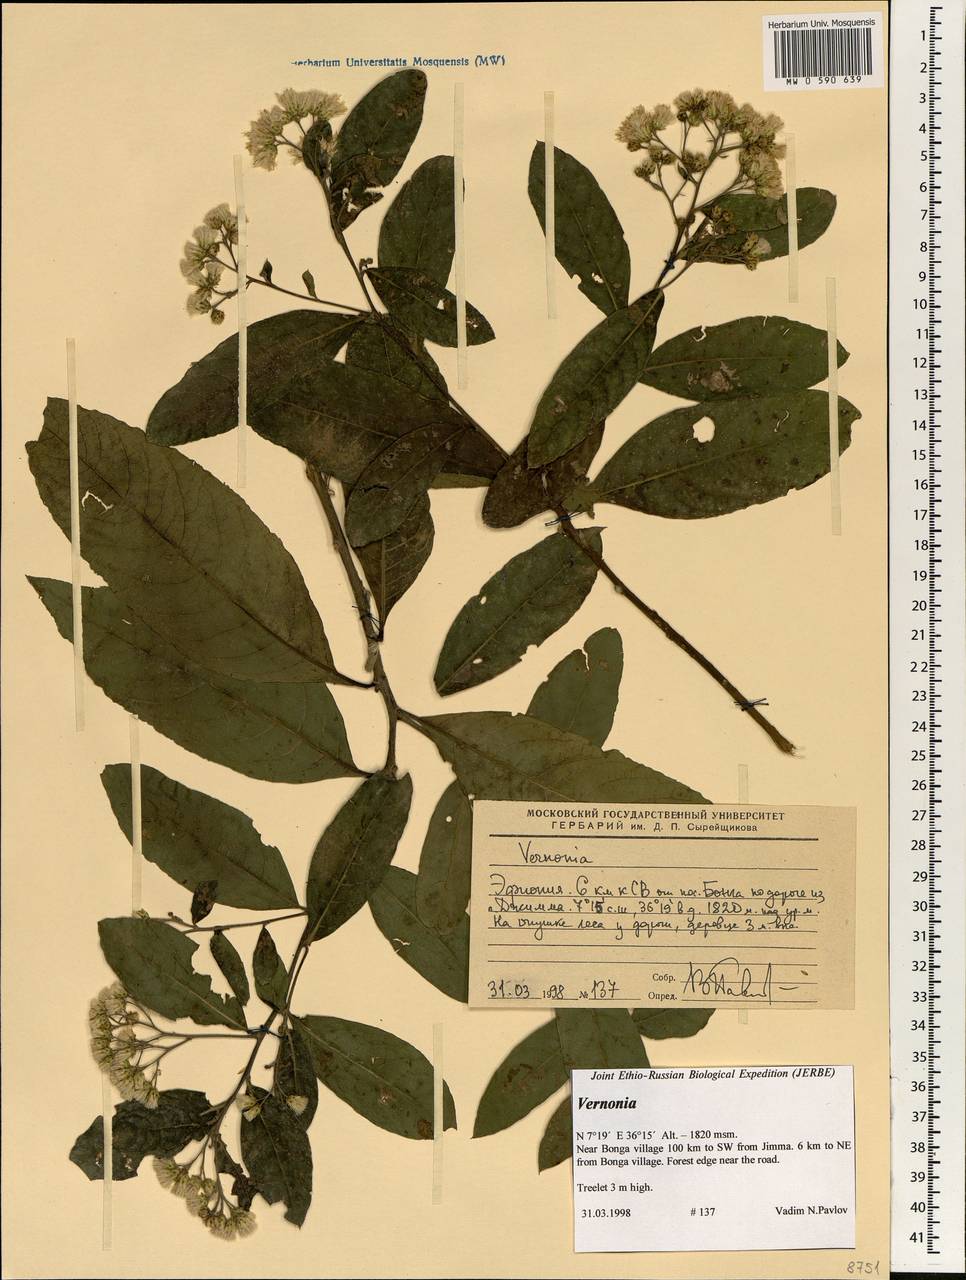 Vernonia, Africa (AFR) (Ethiopia)